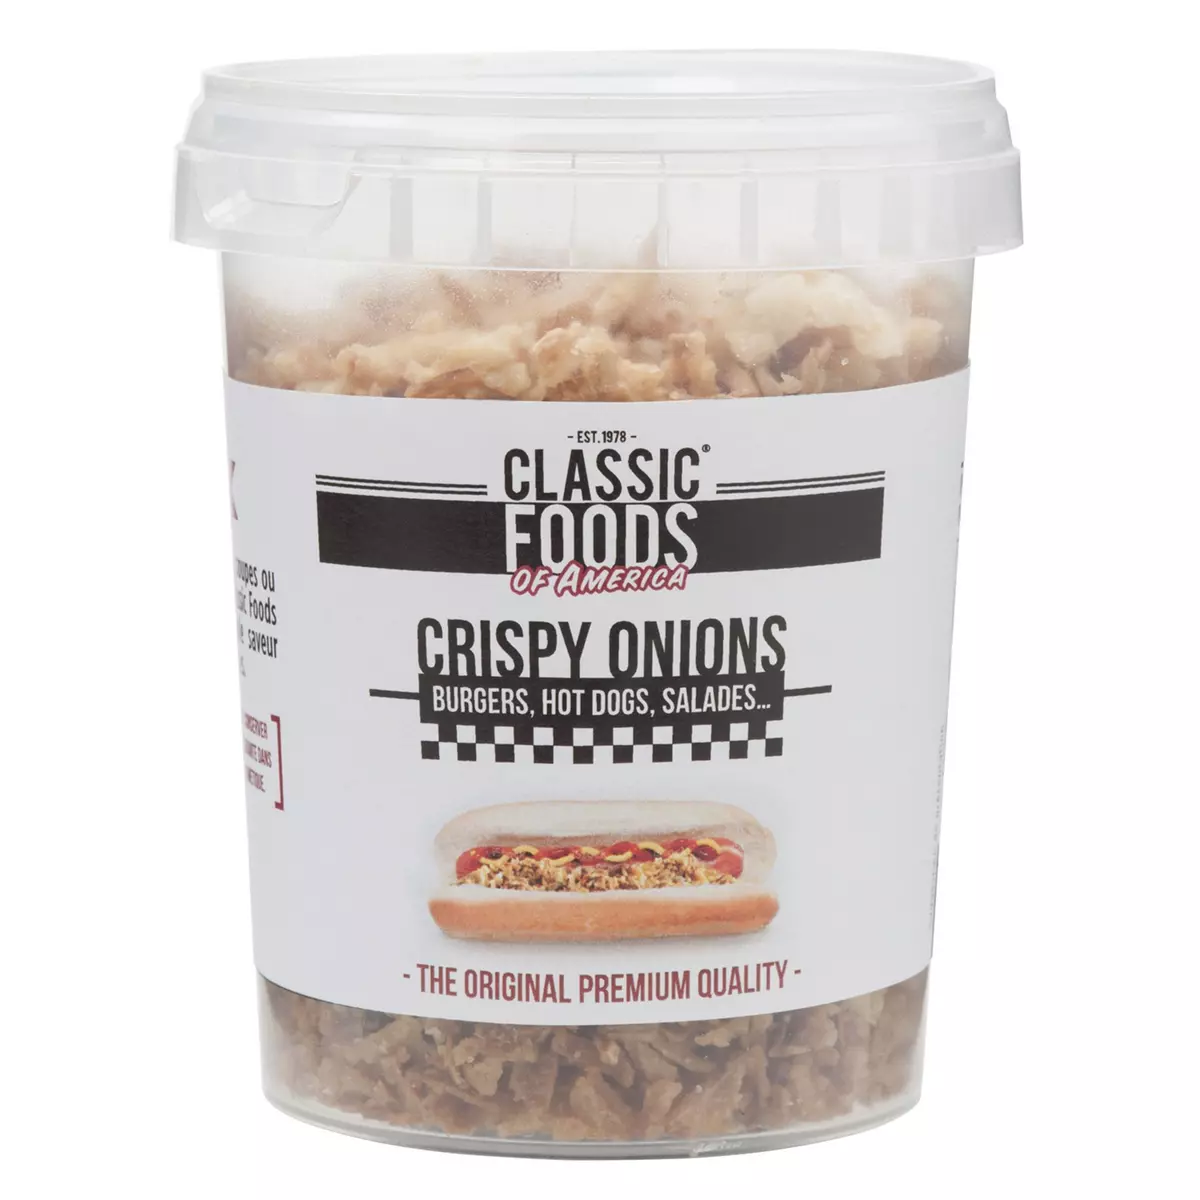 CLASSIC FOODS OF AMERICA Crispy onions 150g